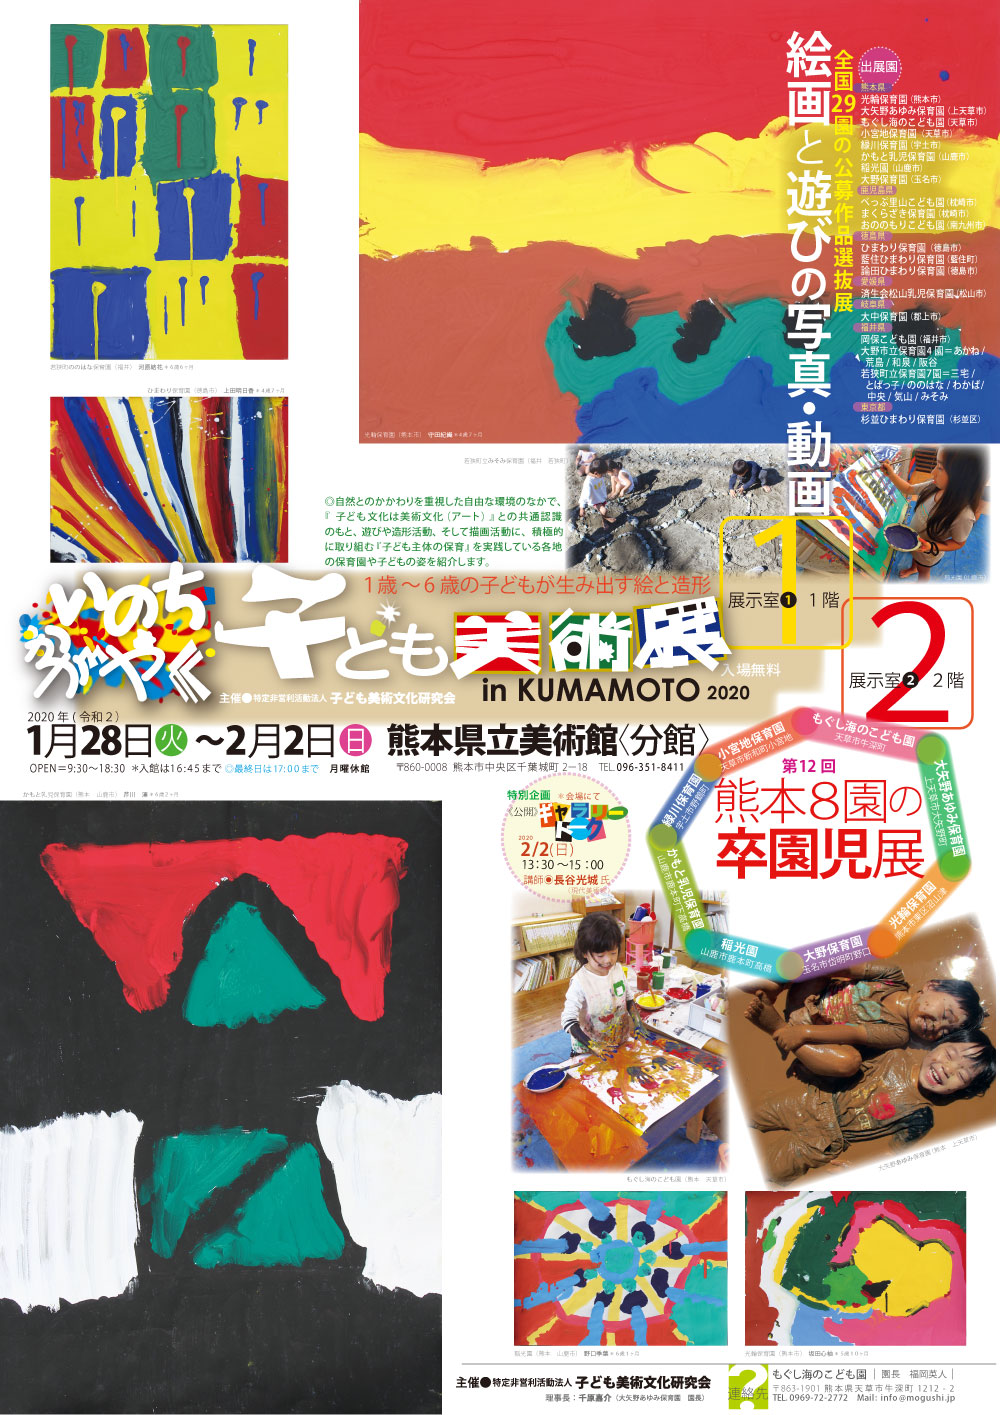 いのちかがやく子ども美術展 in KUMAMOTO 2020